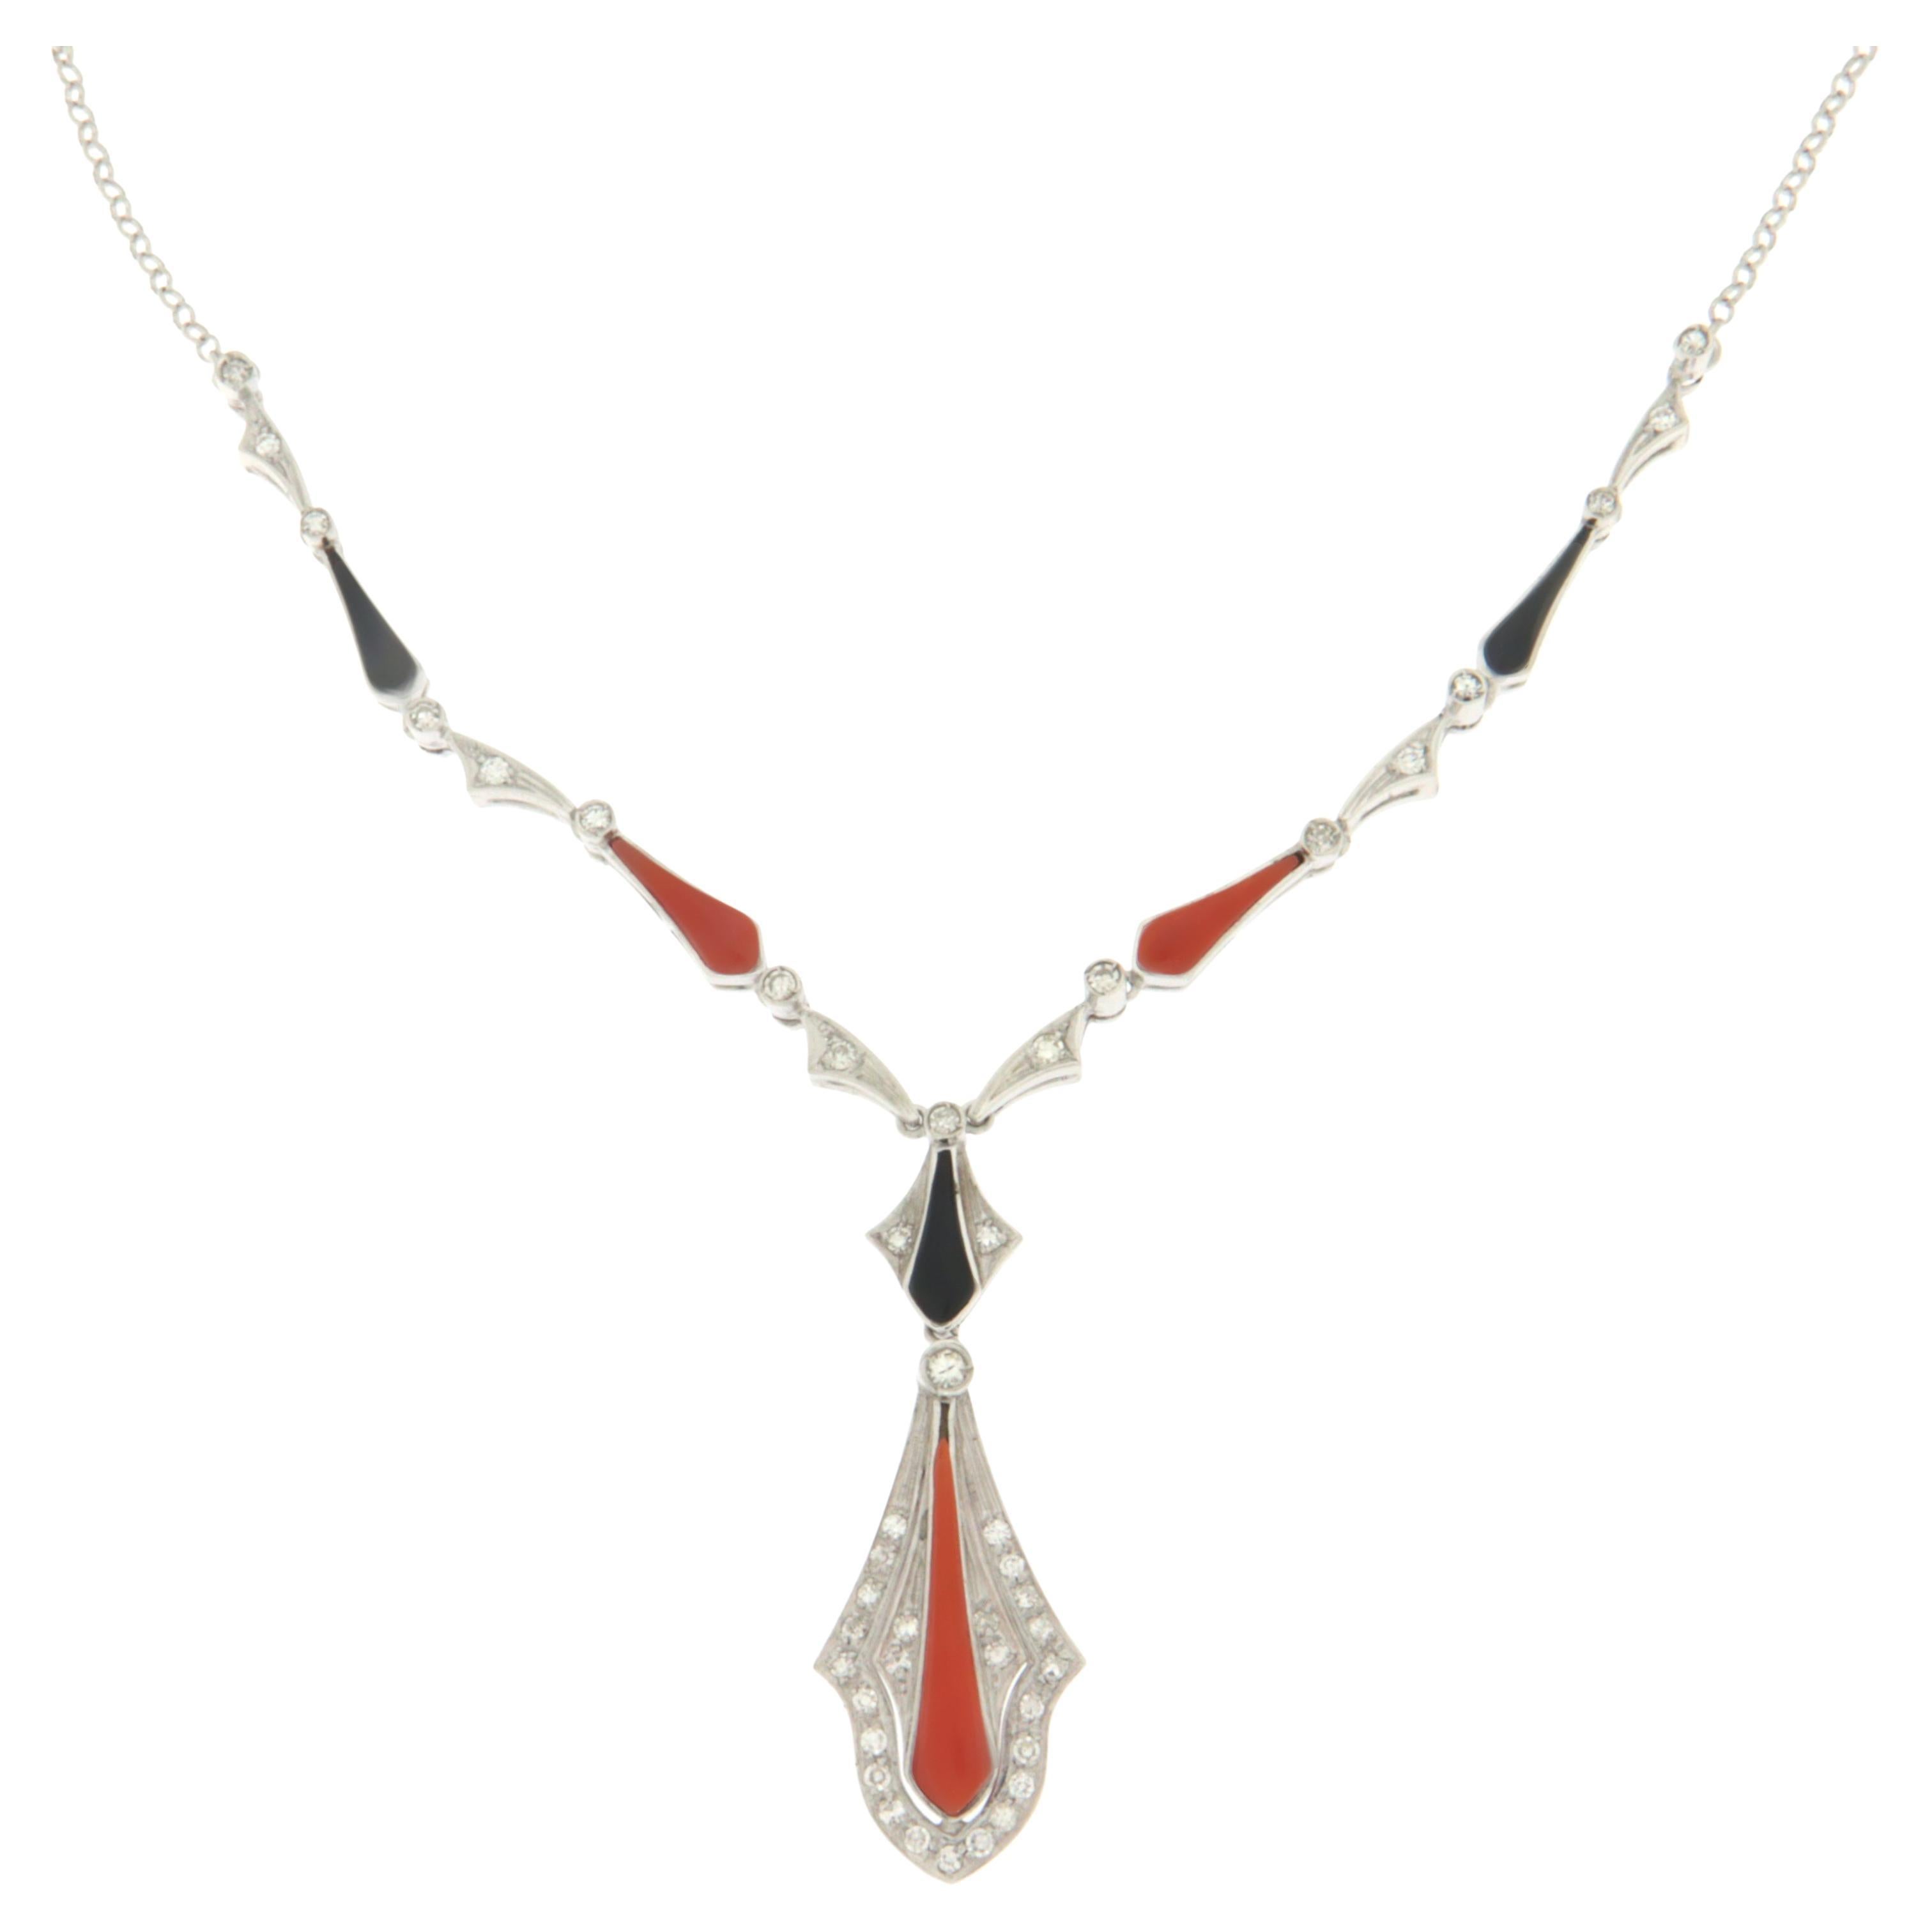 Collier pendentif artisanal en corail, or blanc 18 carats, onyx et diamants